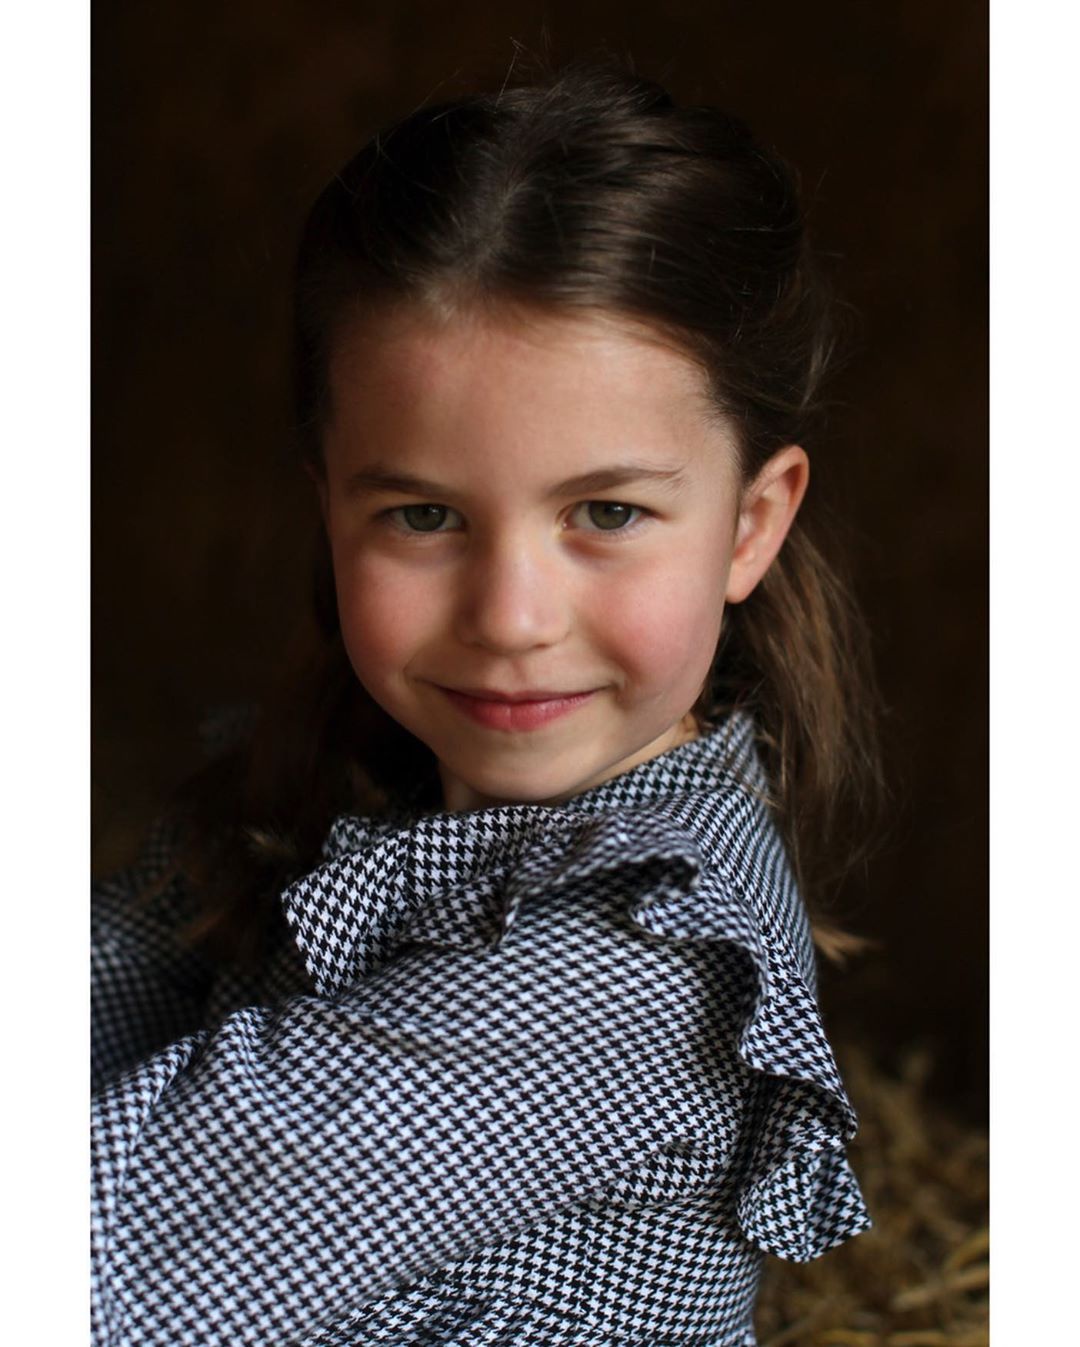 英国夏洛特公主5岁了! 凯特王妃拍摄的写真公开